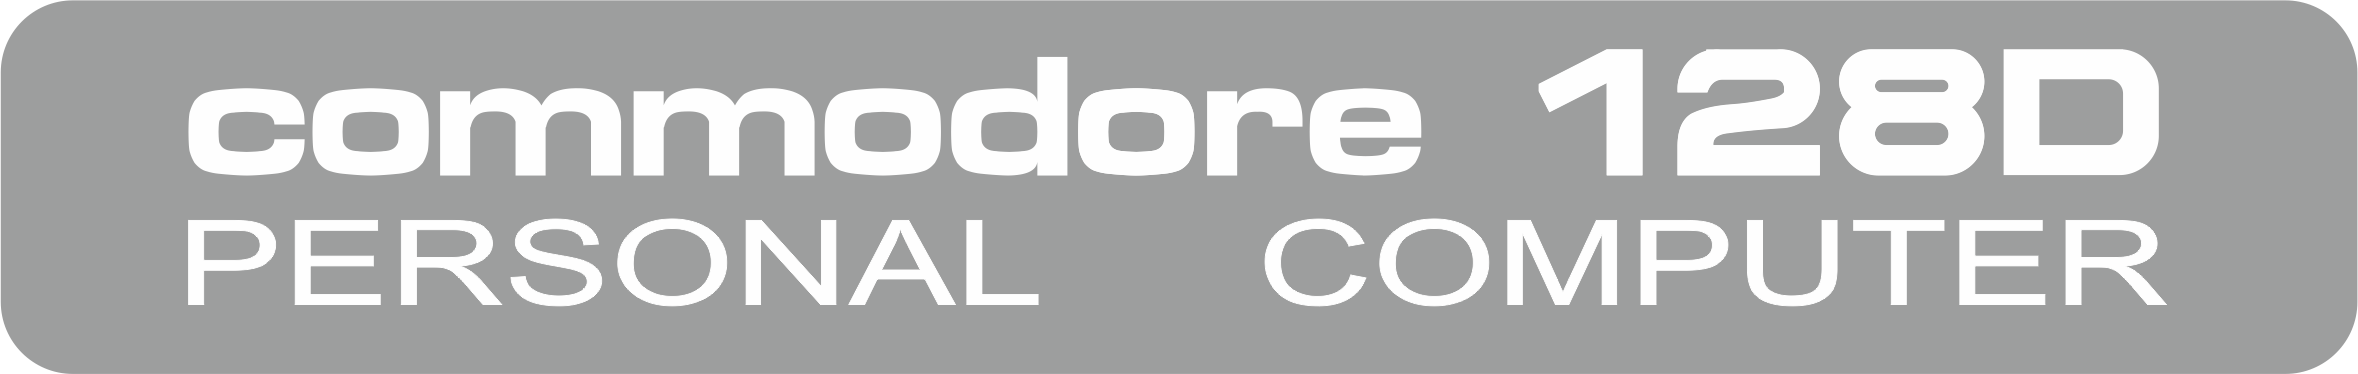 Commodore C128DCR: logo